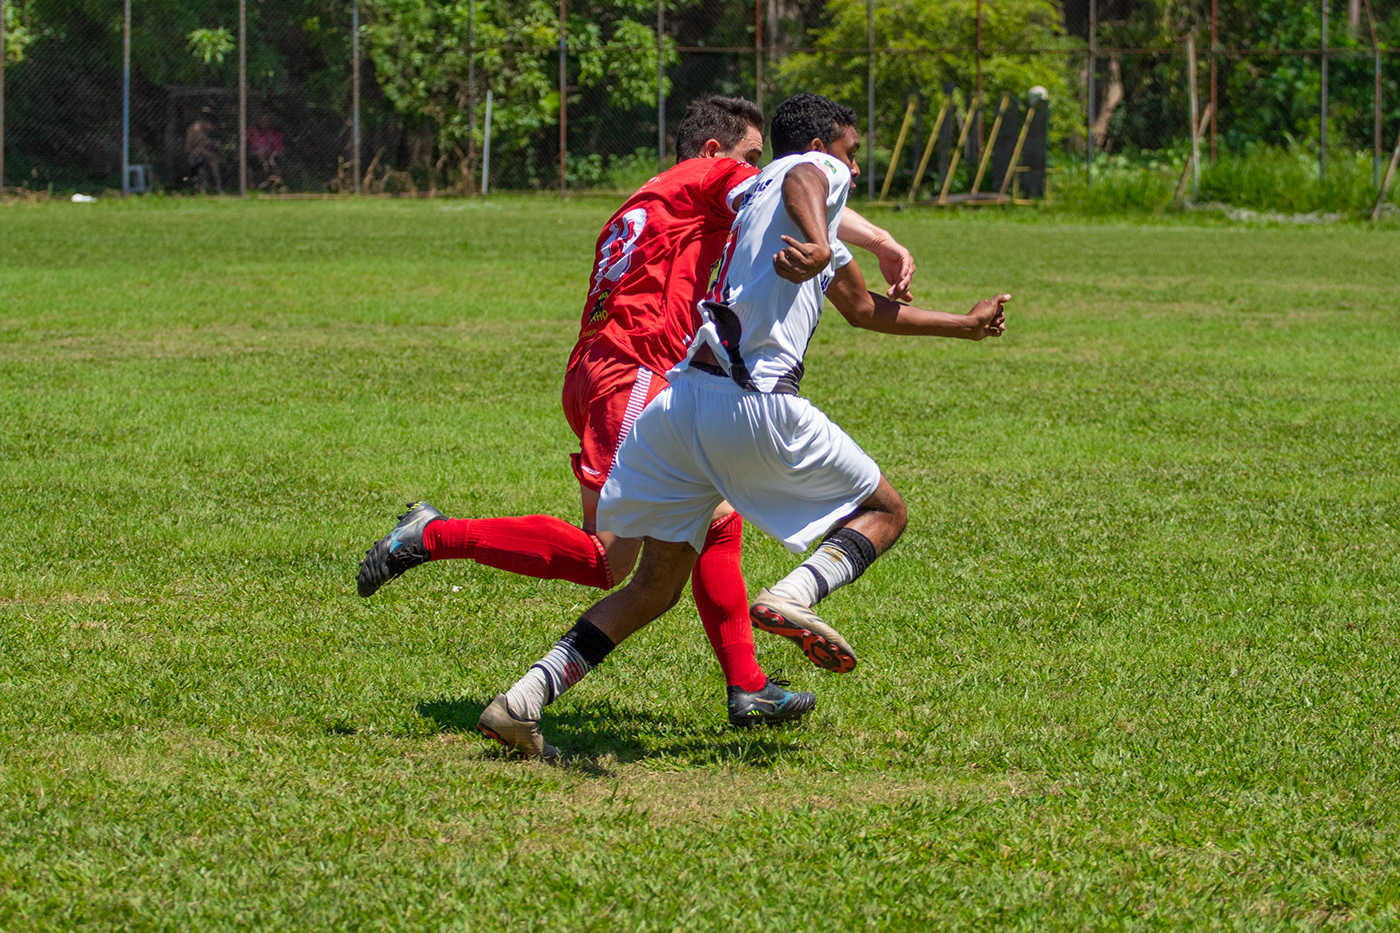 Esporte Fotografia FotografiaEsportiva futebol brasileiro soccer